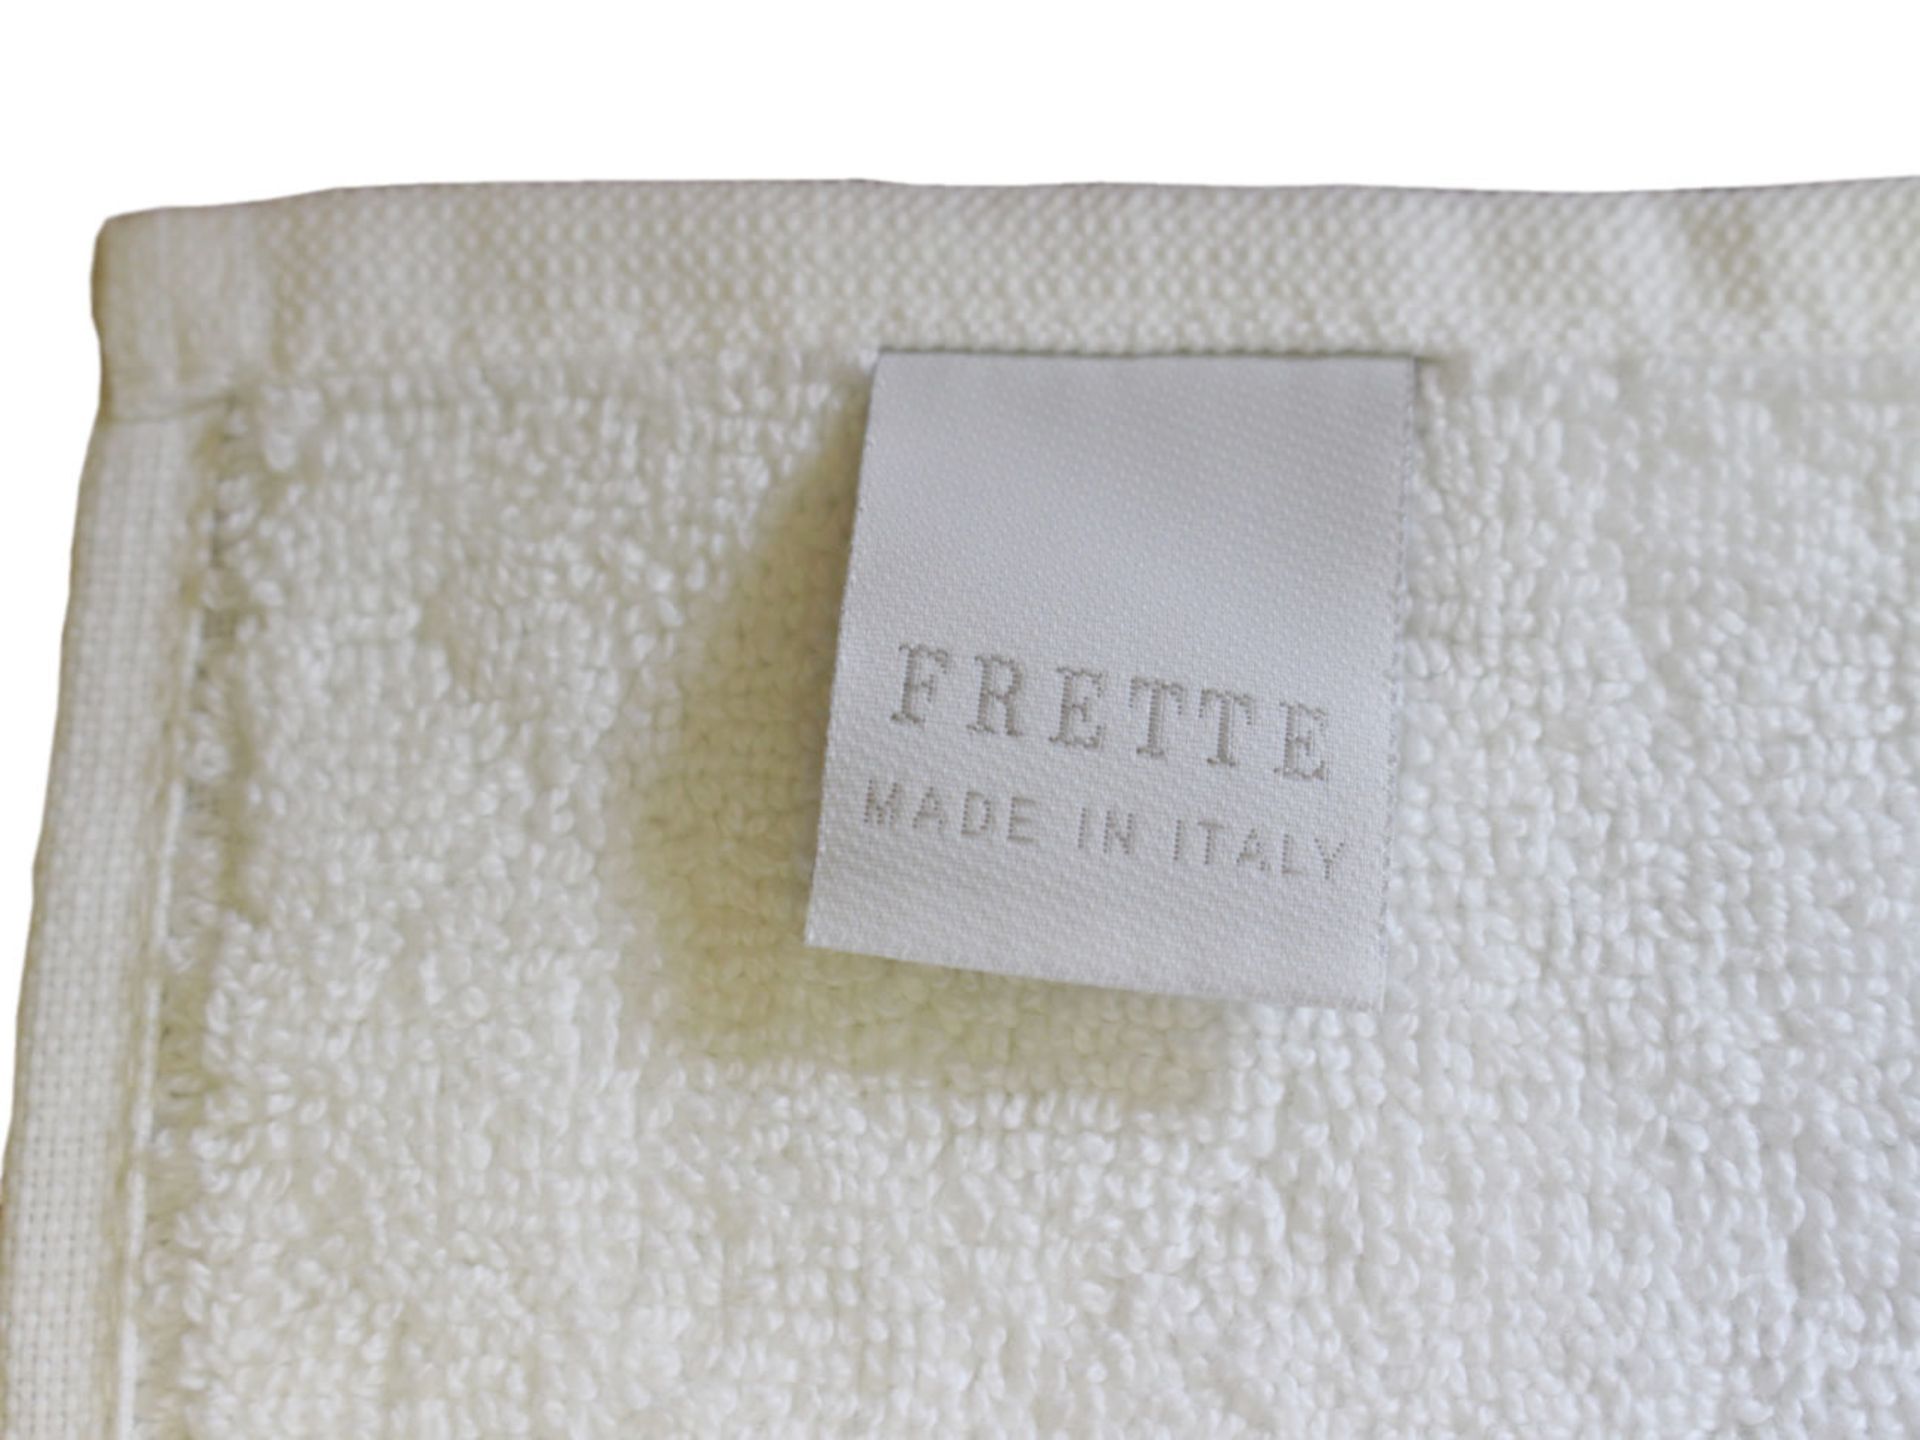 V Brand New Frette Italian Bath Mat - 75 x 50cm - White